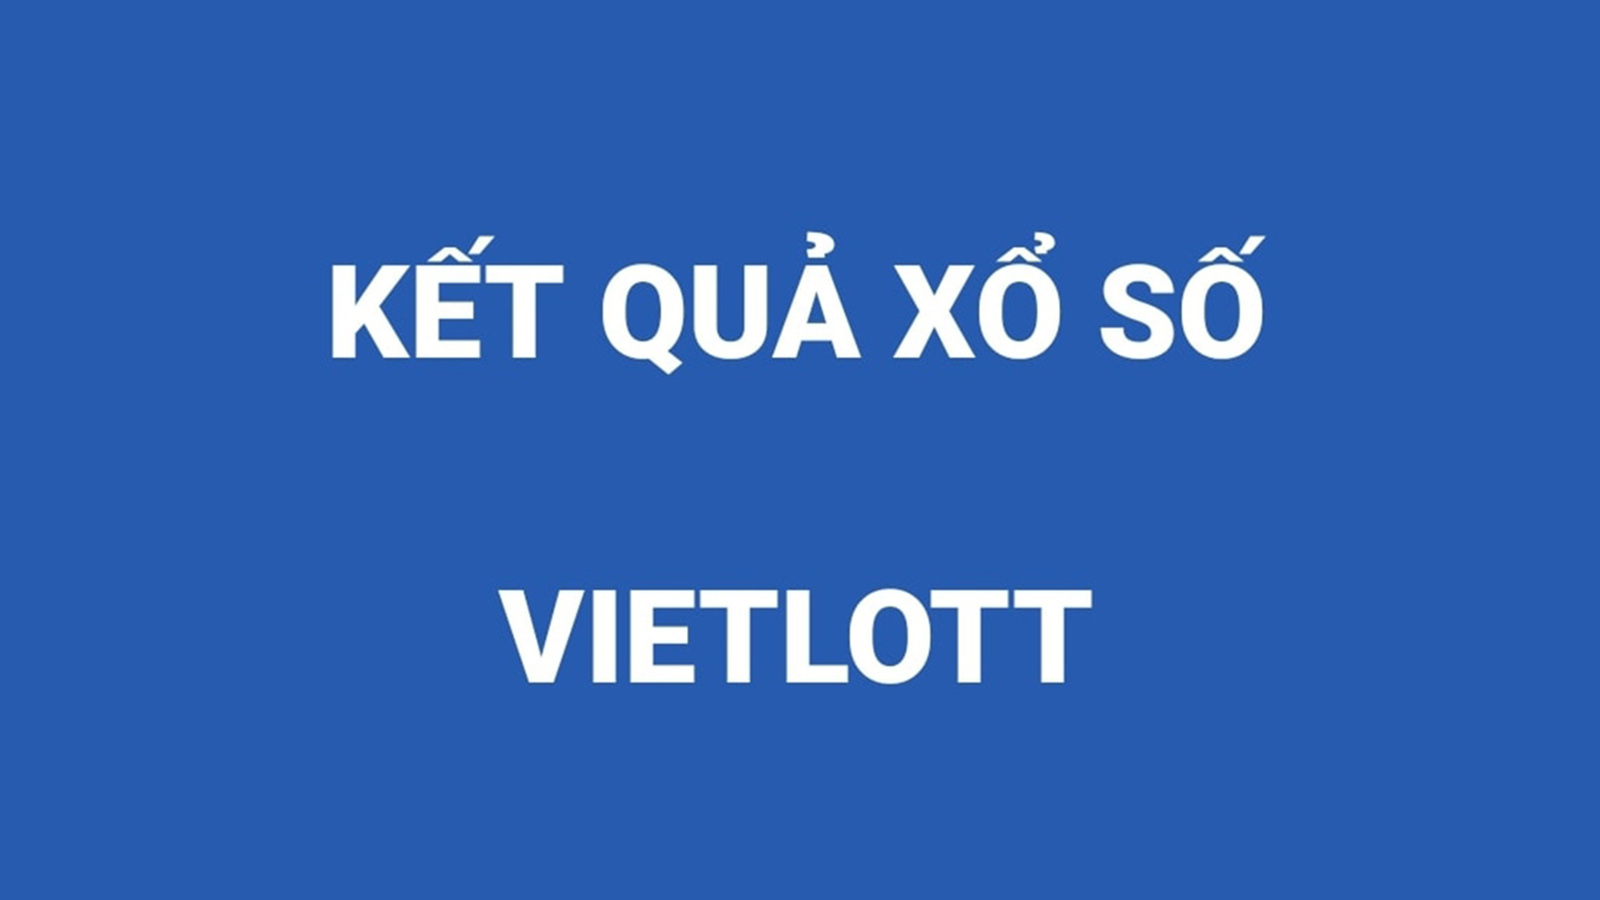 Vietlott 6/55: Kết quả xổ số Vietlott Power 6 55 hôm nay ngày 18/8/2020